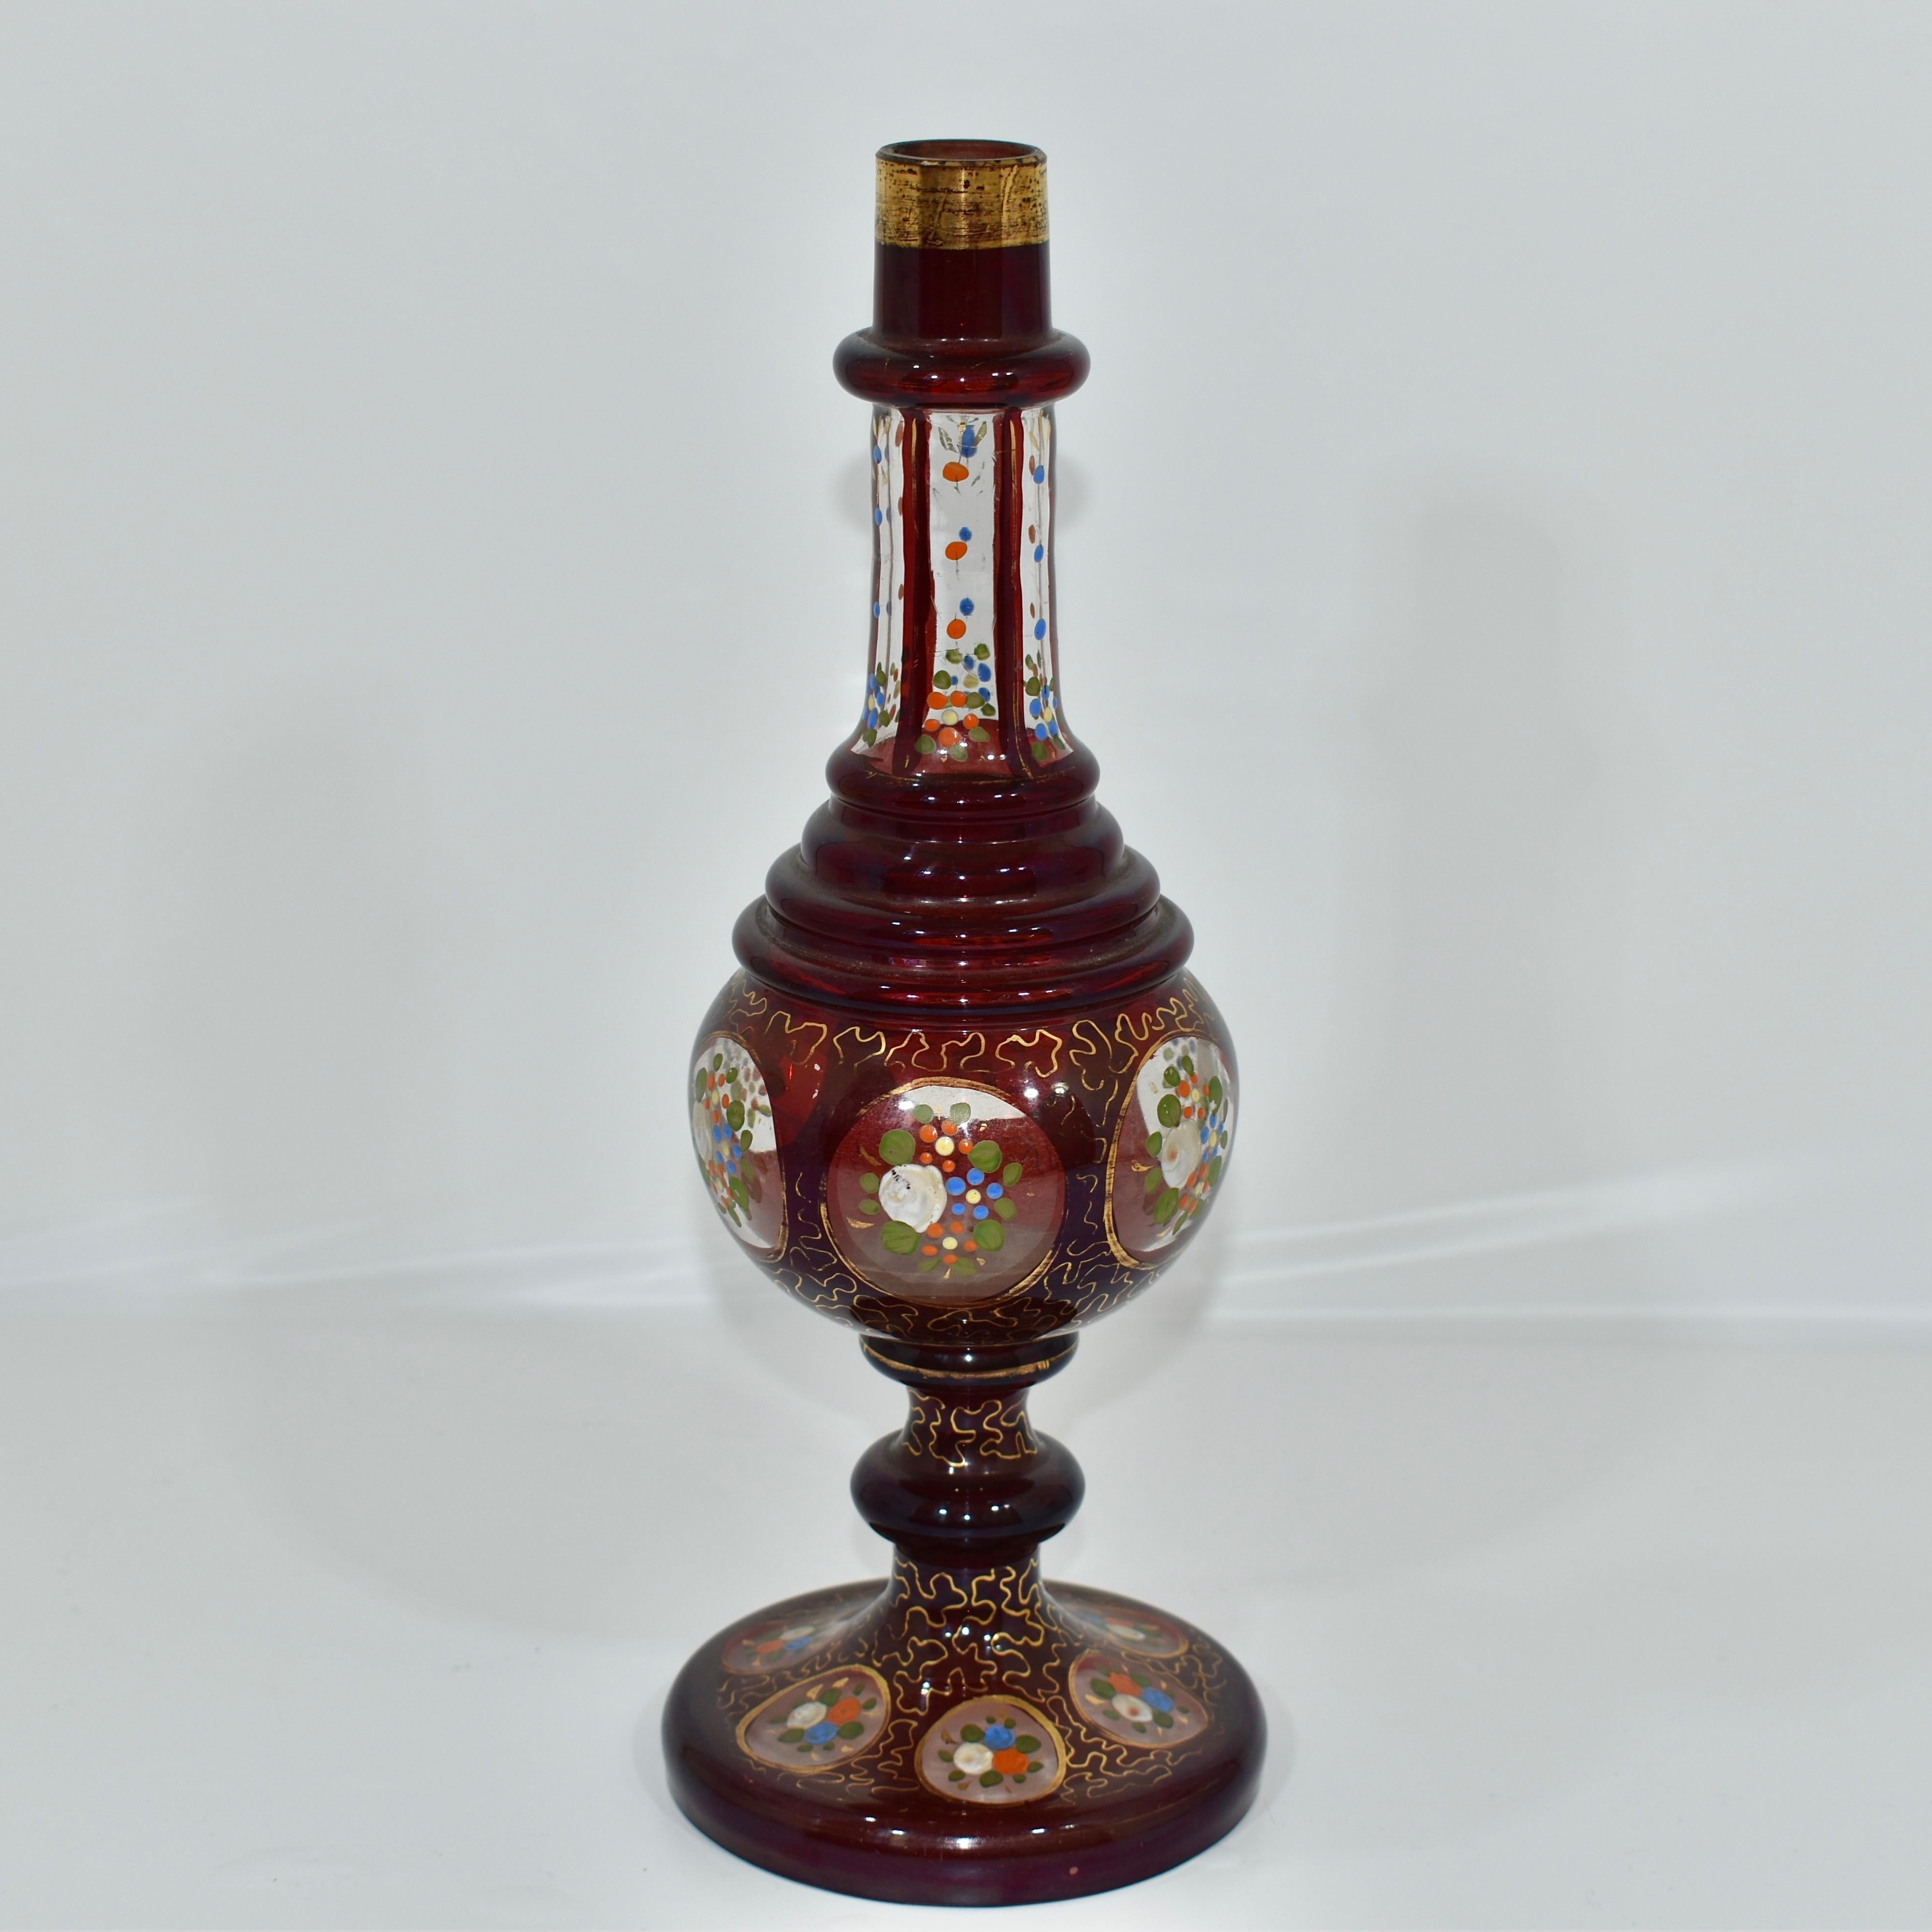 Antike Klar- und Rubinglas-Rosen-Wassersprinkler

Verziert mit farbenfroher Emaille und vergoldeten Highlights

Schönes Beispiel für hochwertiges böhmisches Glas, das im 19. Jahrhundert für den islamischen Markt hergestellt wurde